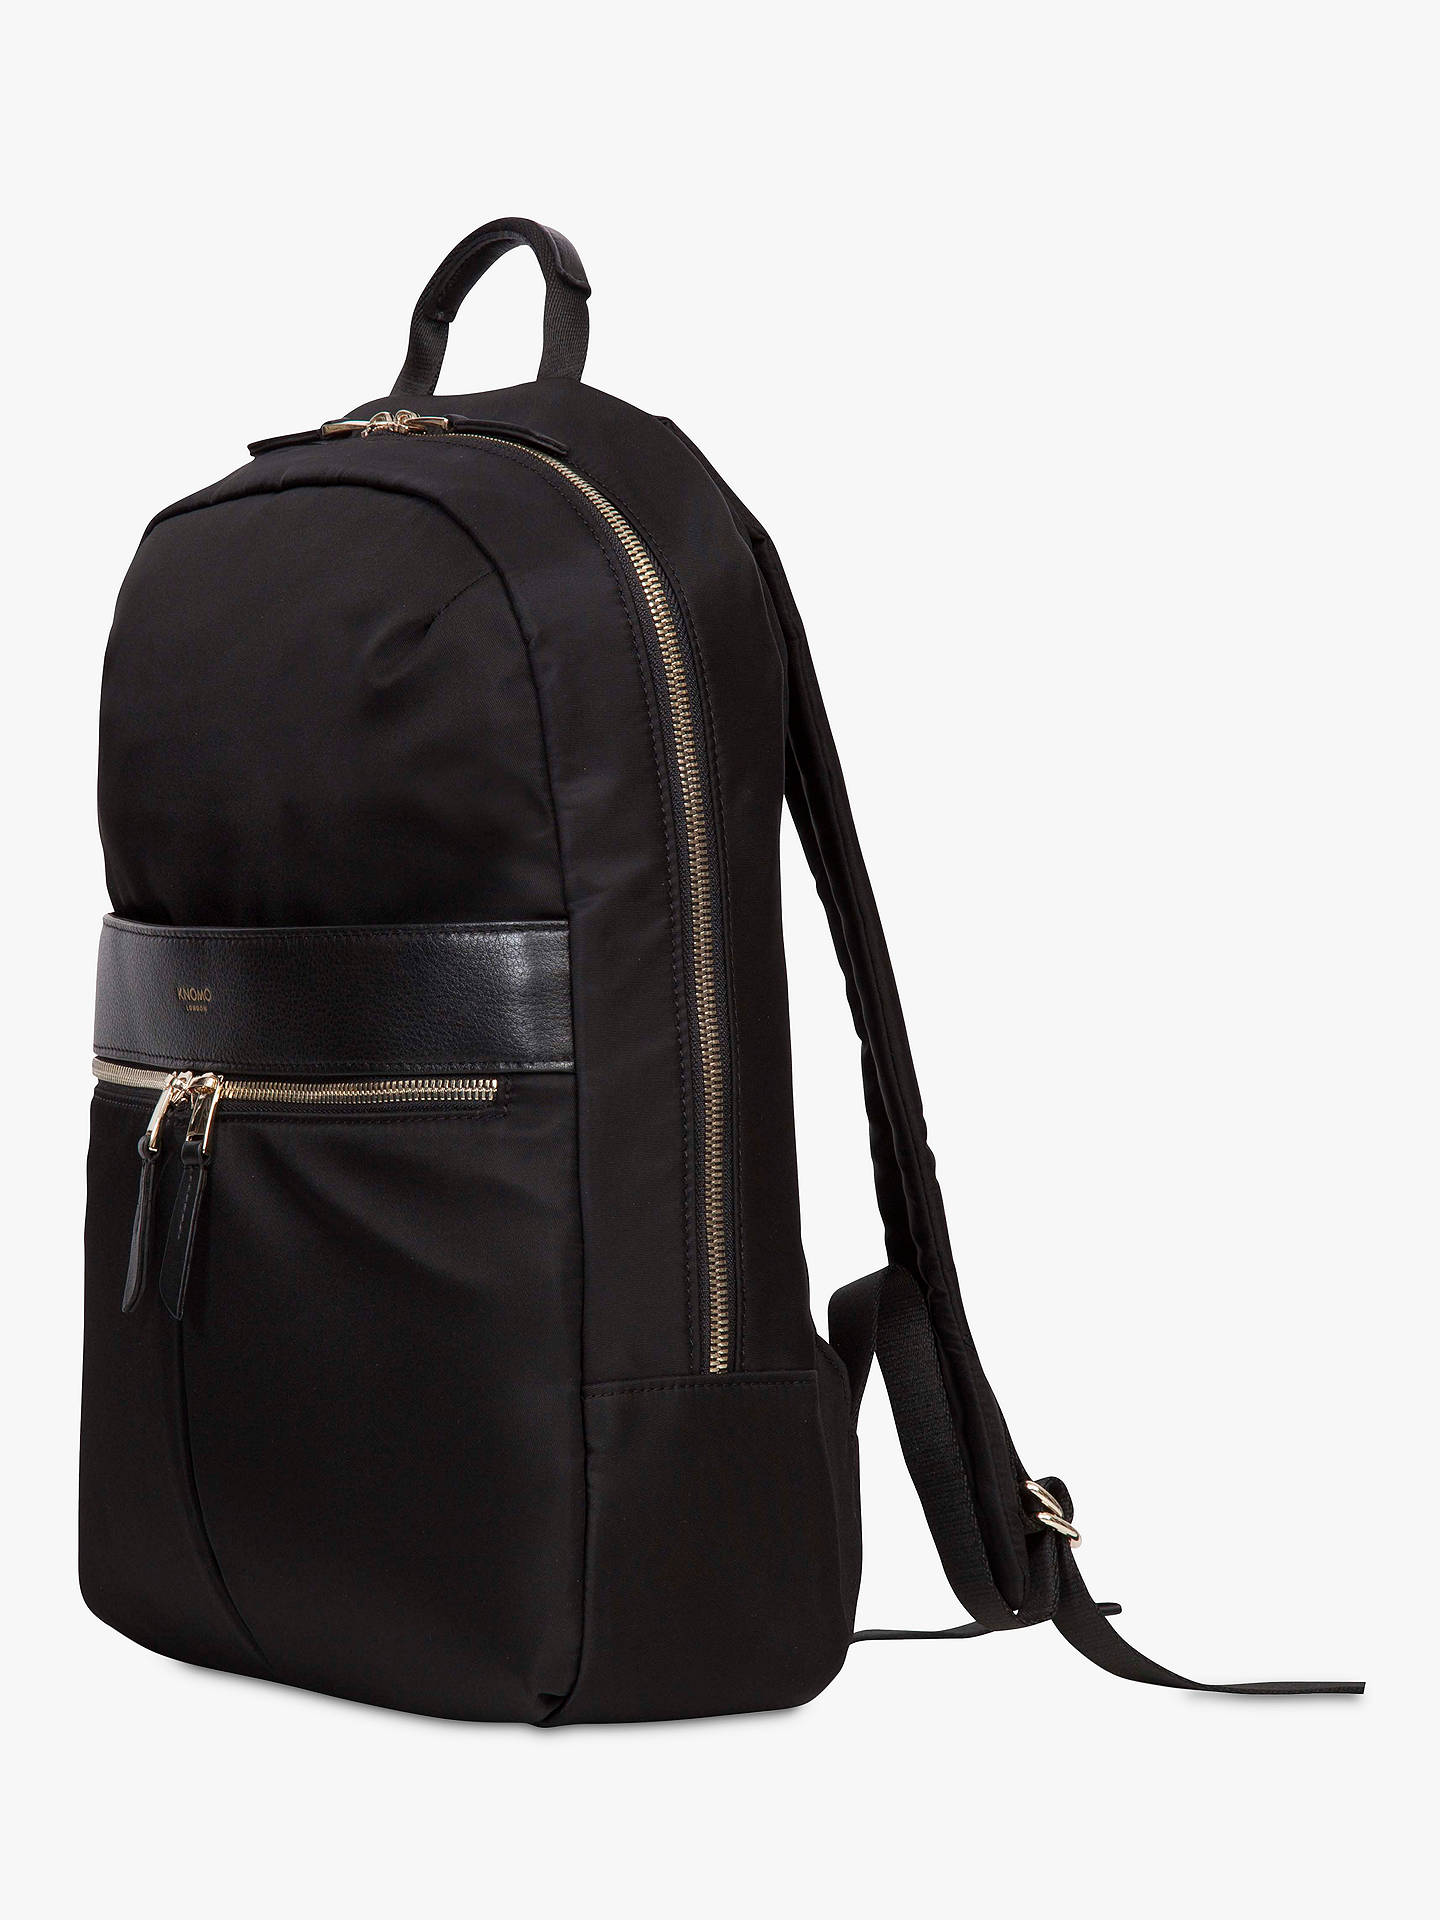 KNOMO Beauchamp Backpack for 14